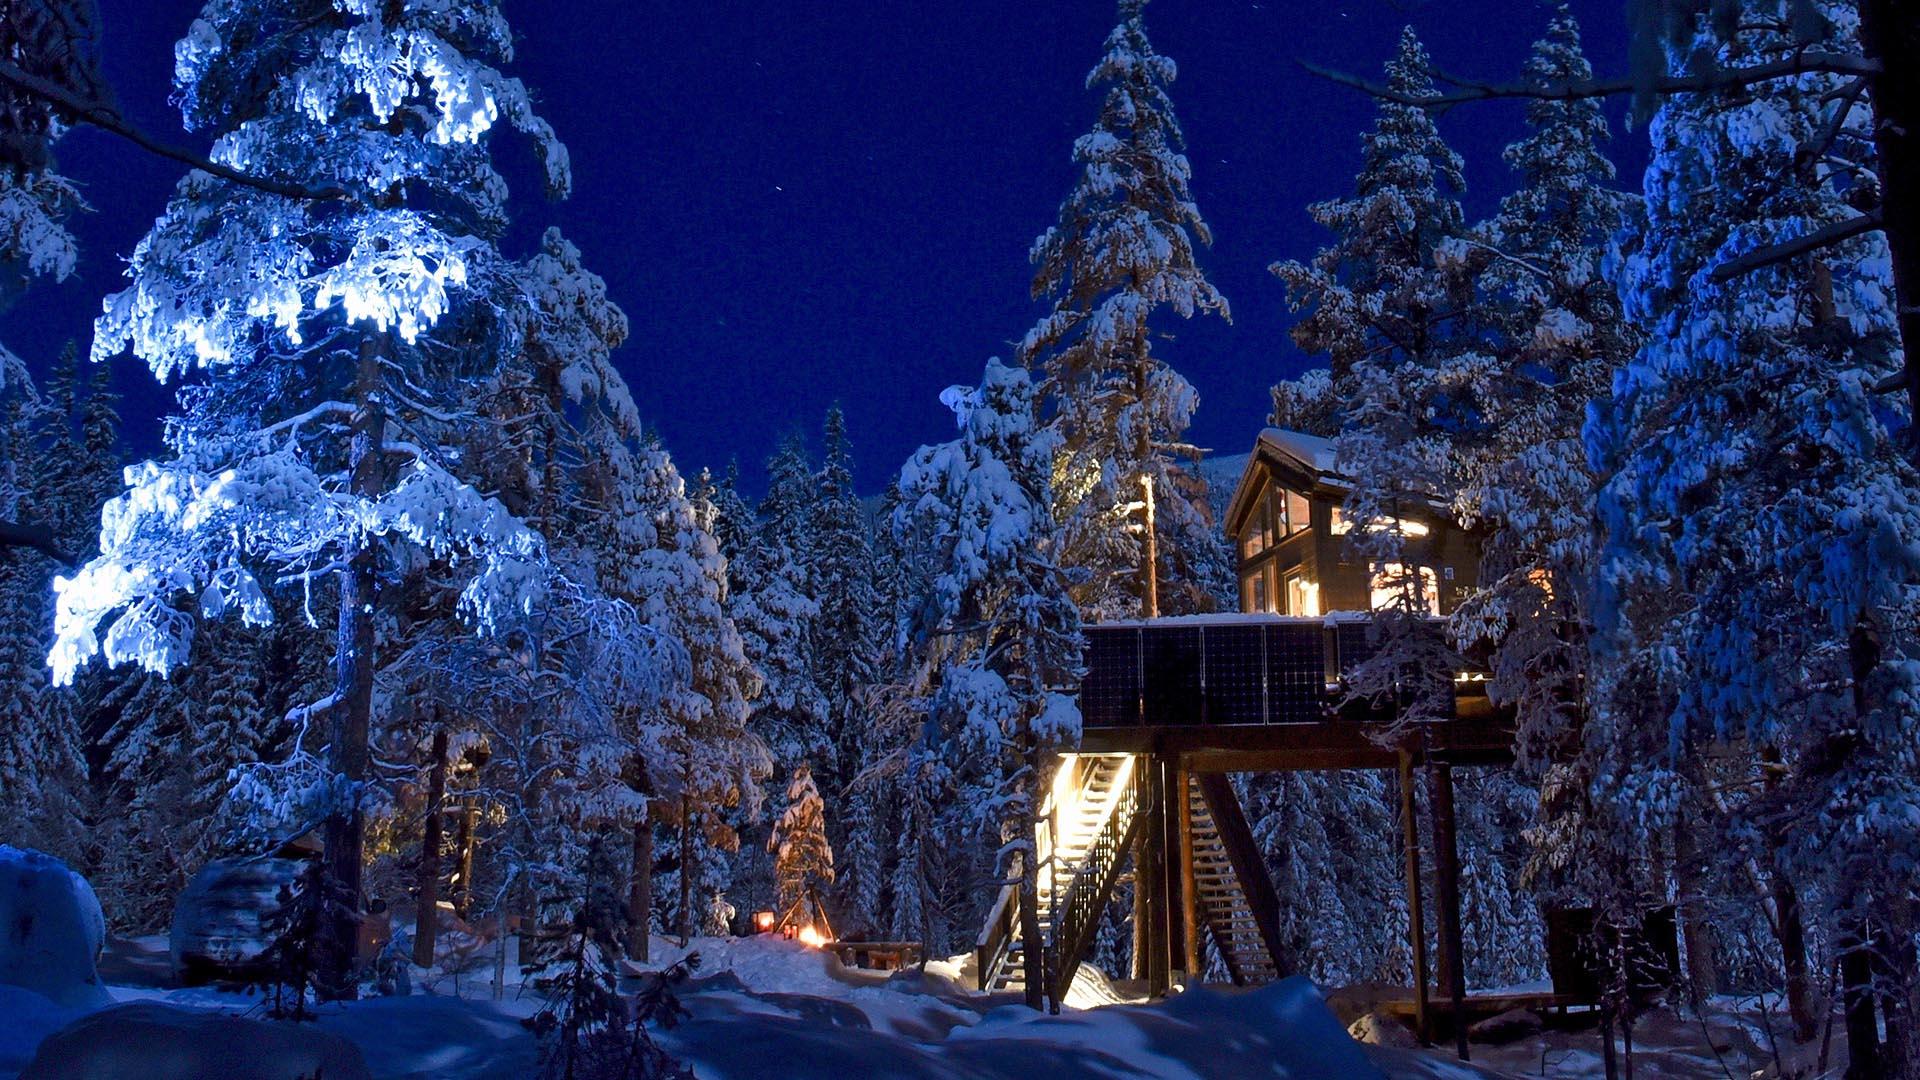 En tretopphytte i furuskogen. Trærne er dekket av mye snø. Det er på natta, og lyset fra hytta farger snøen og himmelen dyp blå.